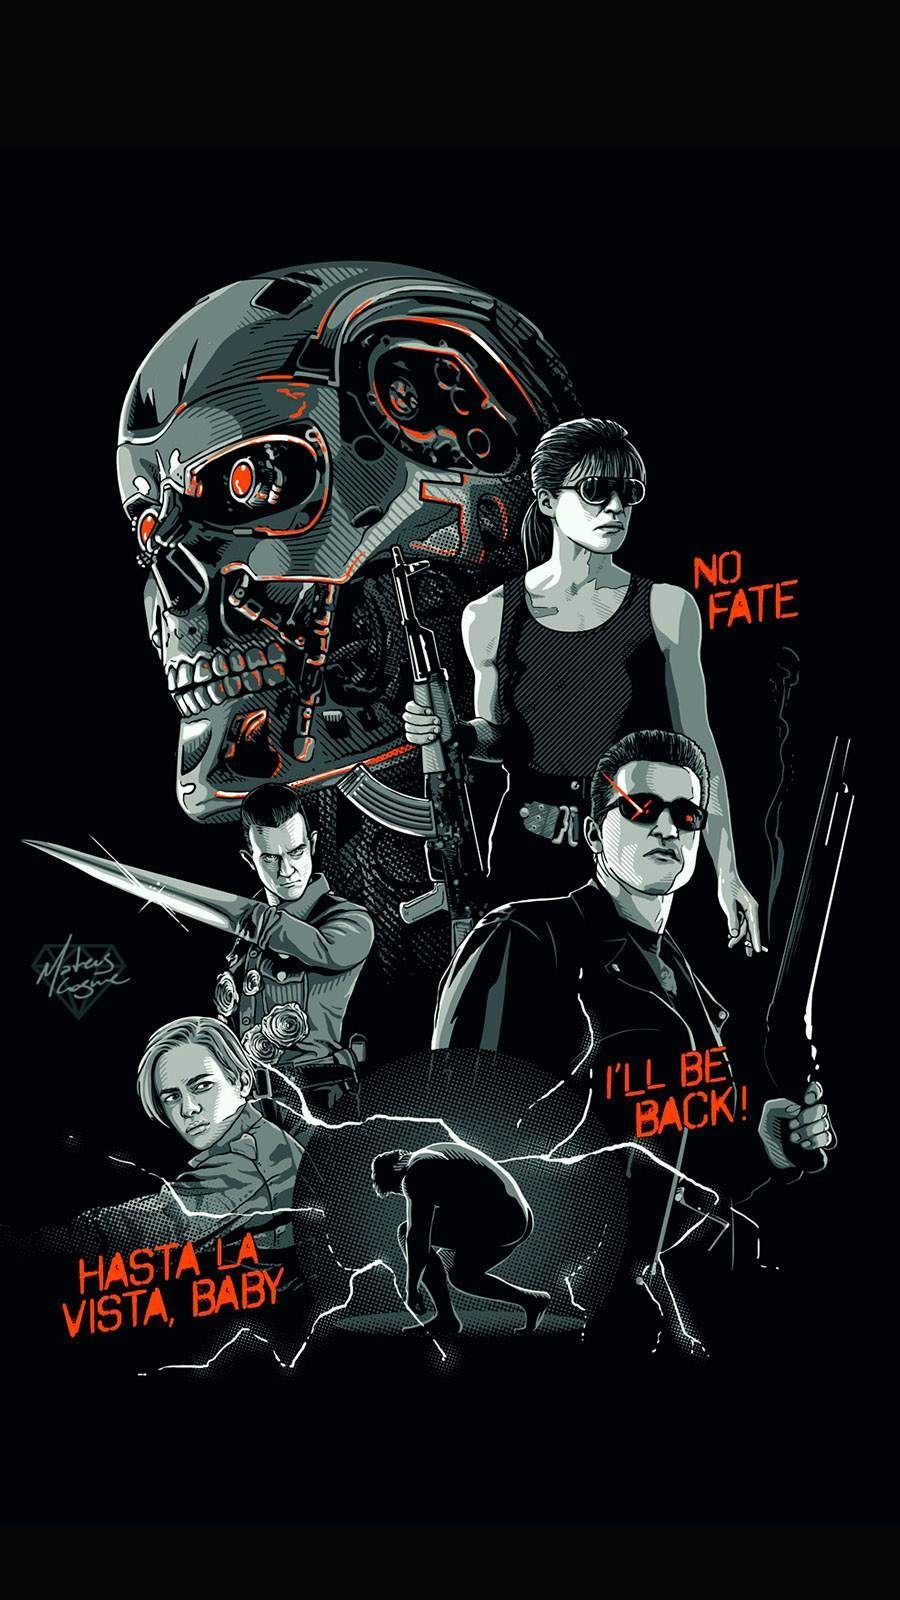 Terminator Dark Fate 8K Poster Wallpapers